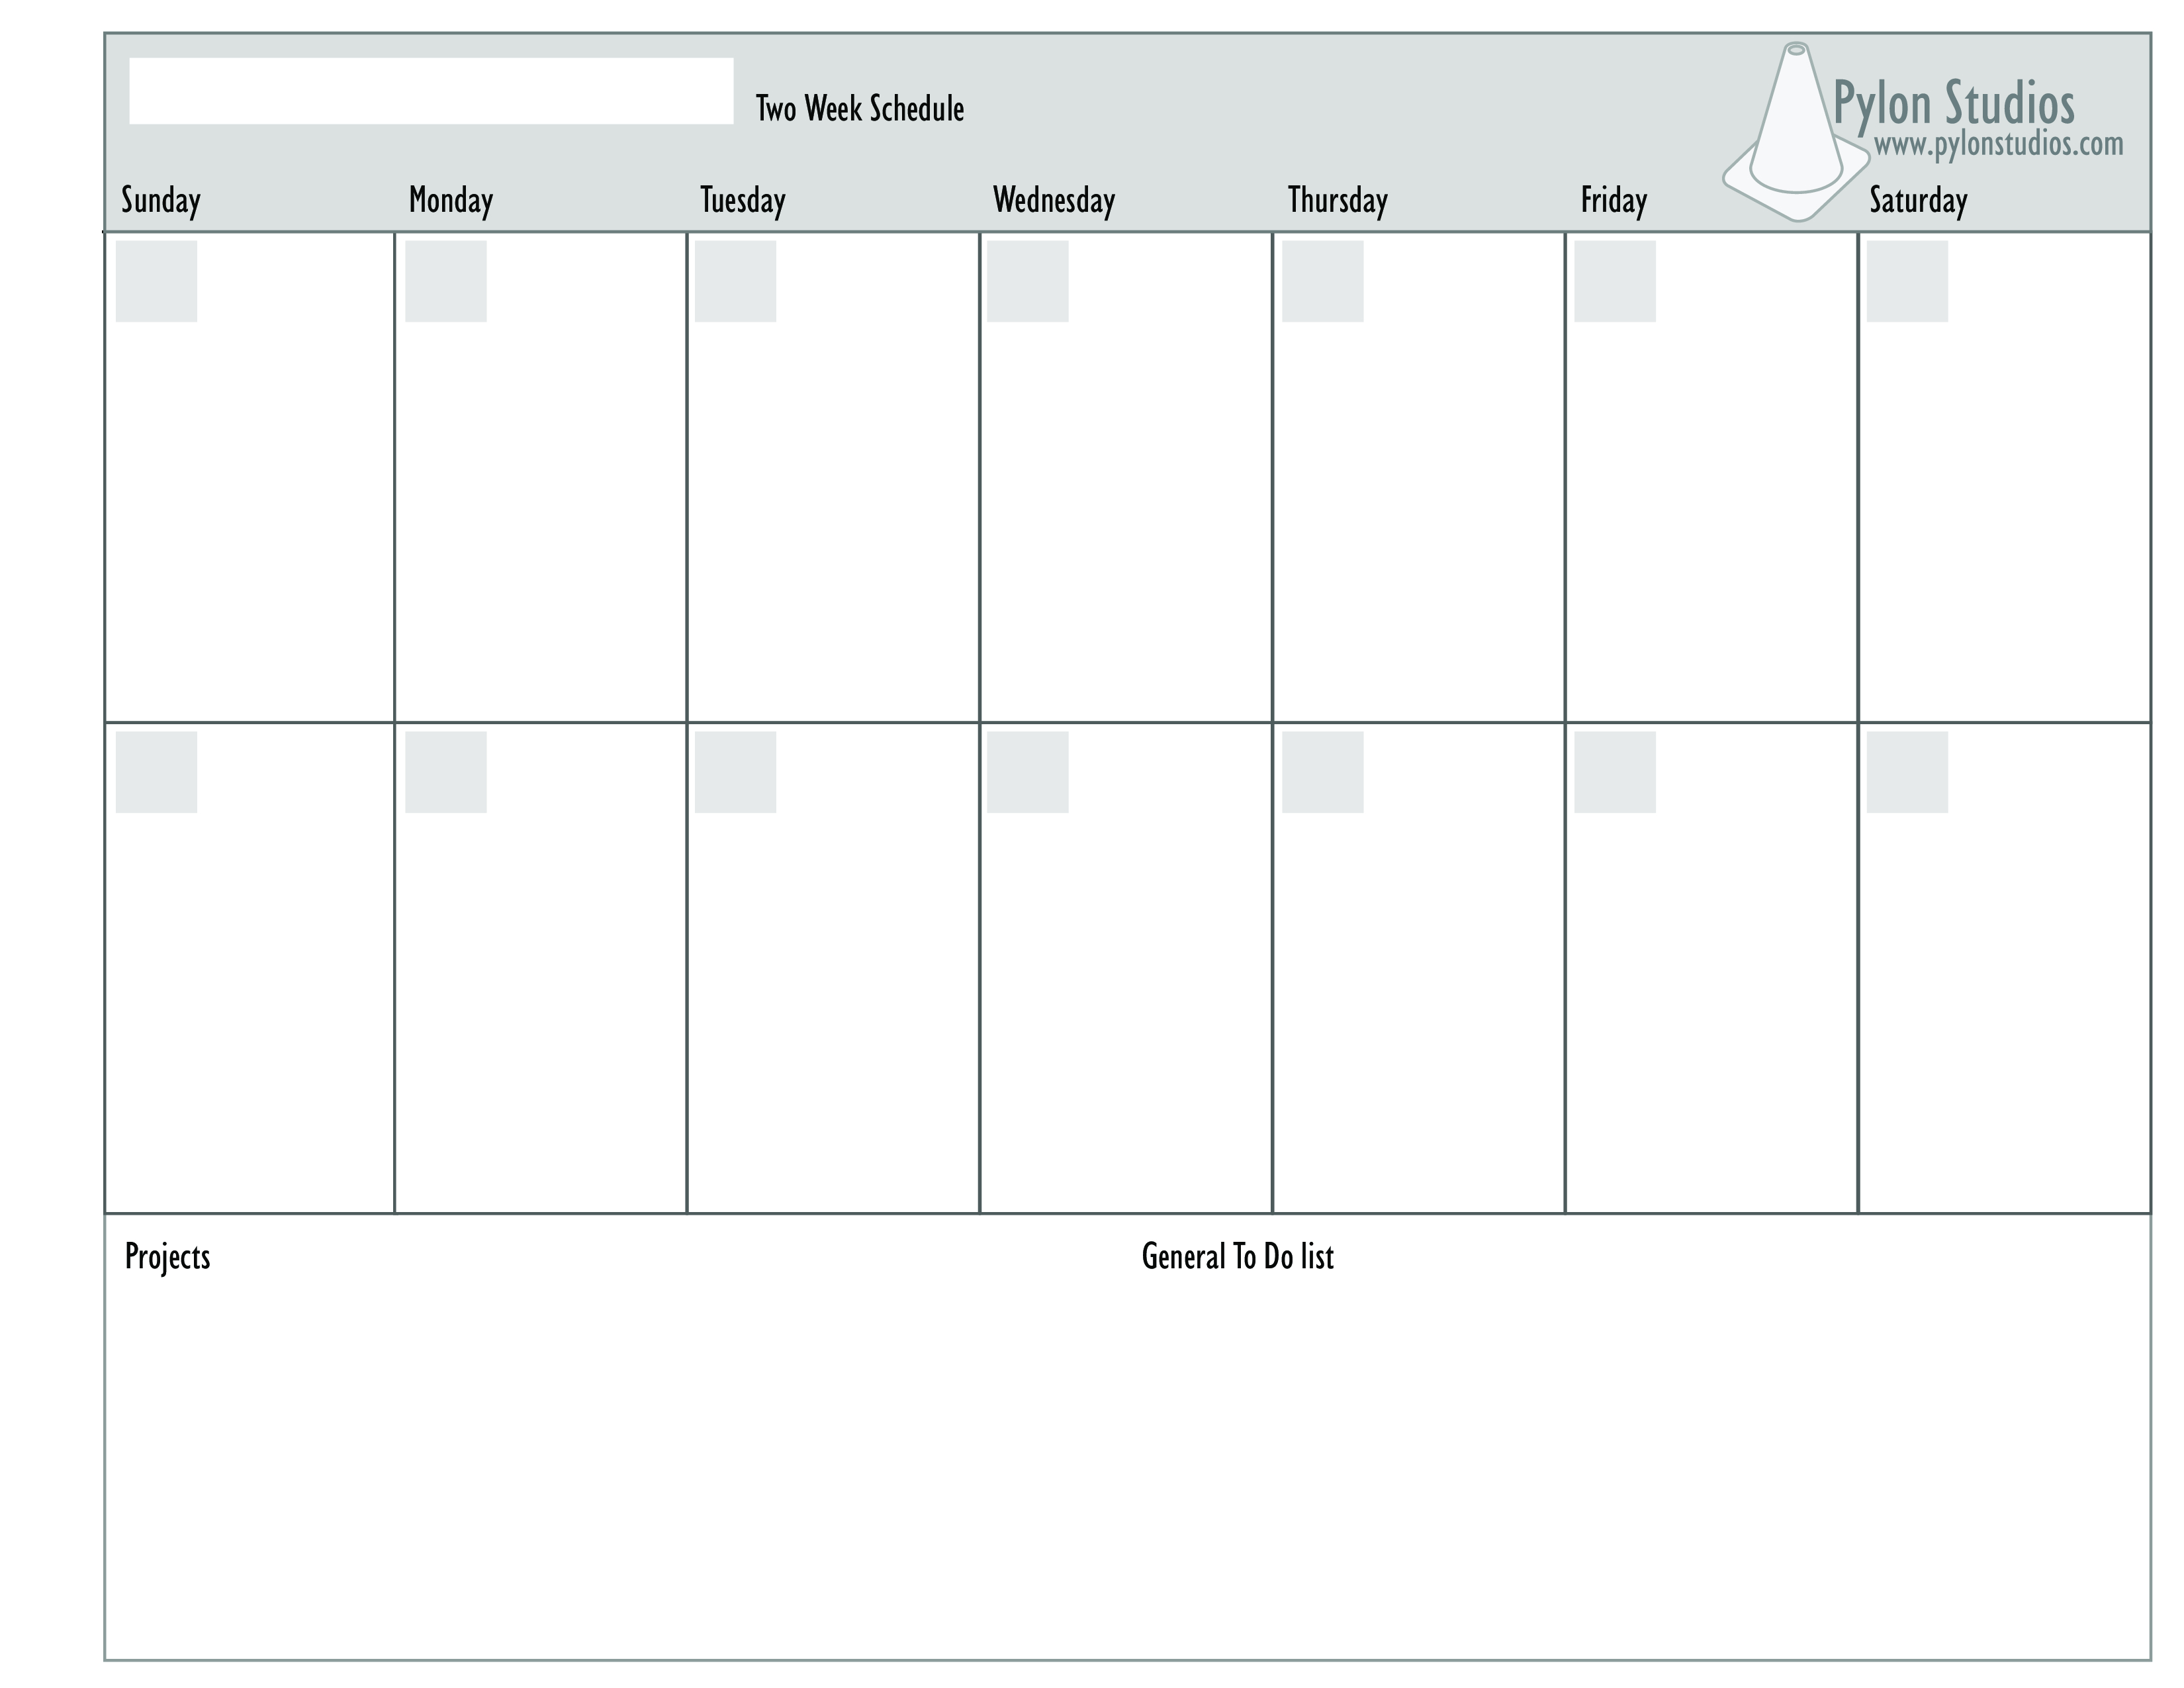 2 week schedule word template 23